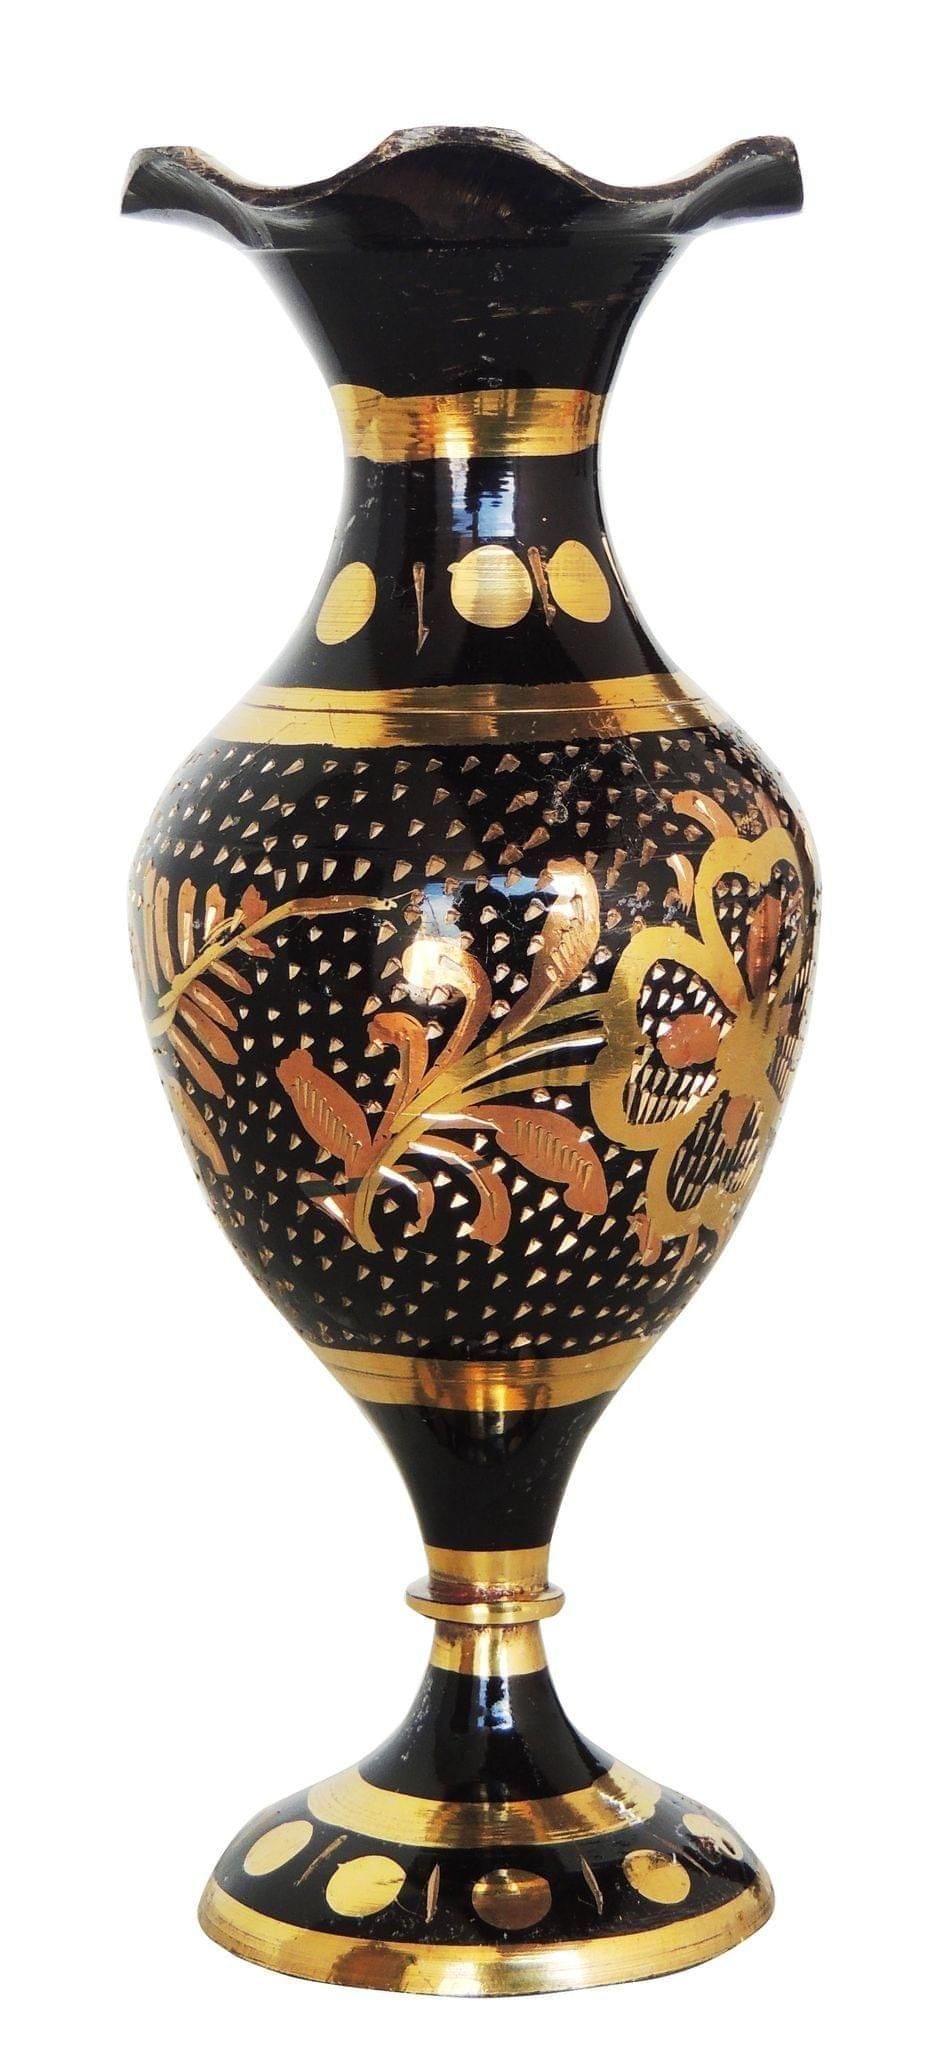 Brass Home & Garden Decorative Flower Pot, Vase - 2*4.8*6 inch (F563 A)